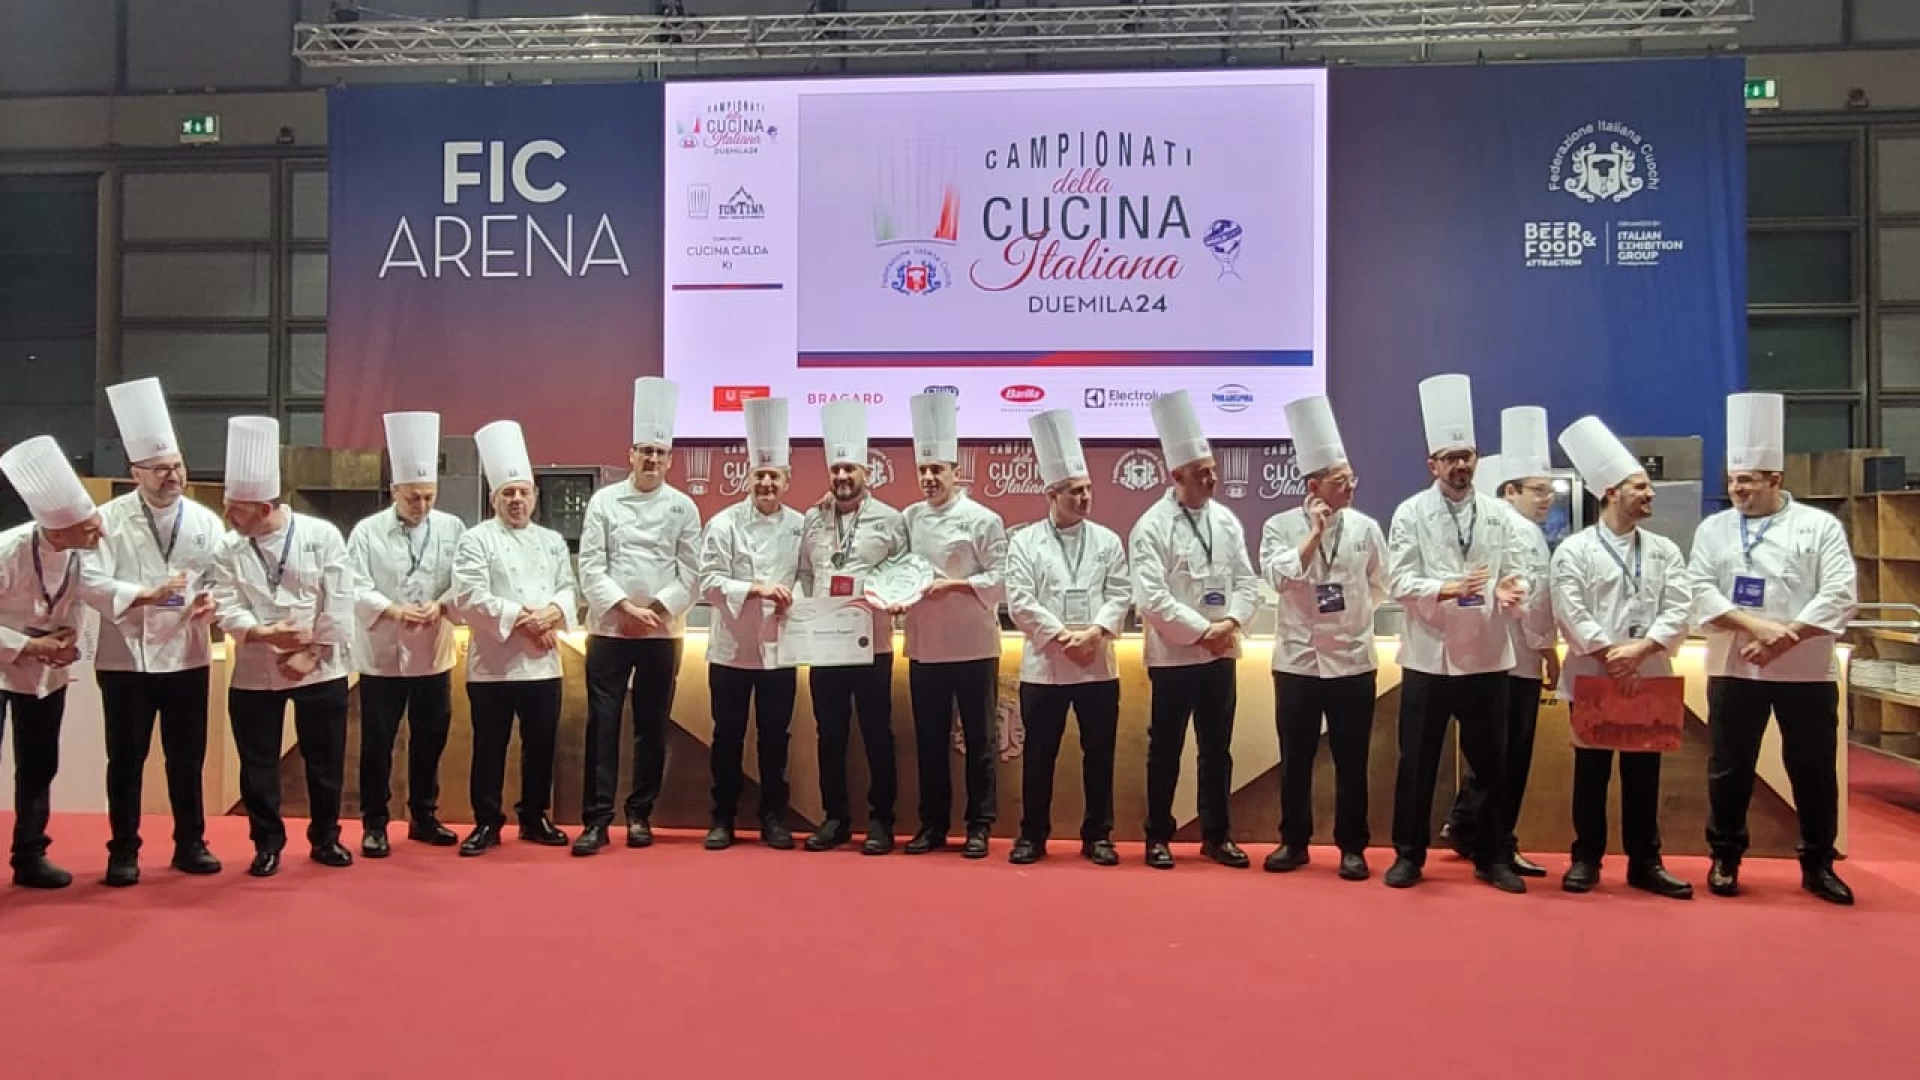 Medaglie e applausi per il Molise al campionato italiano di cucina.